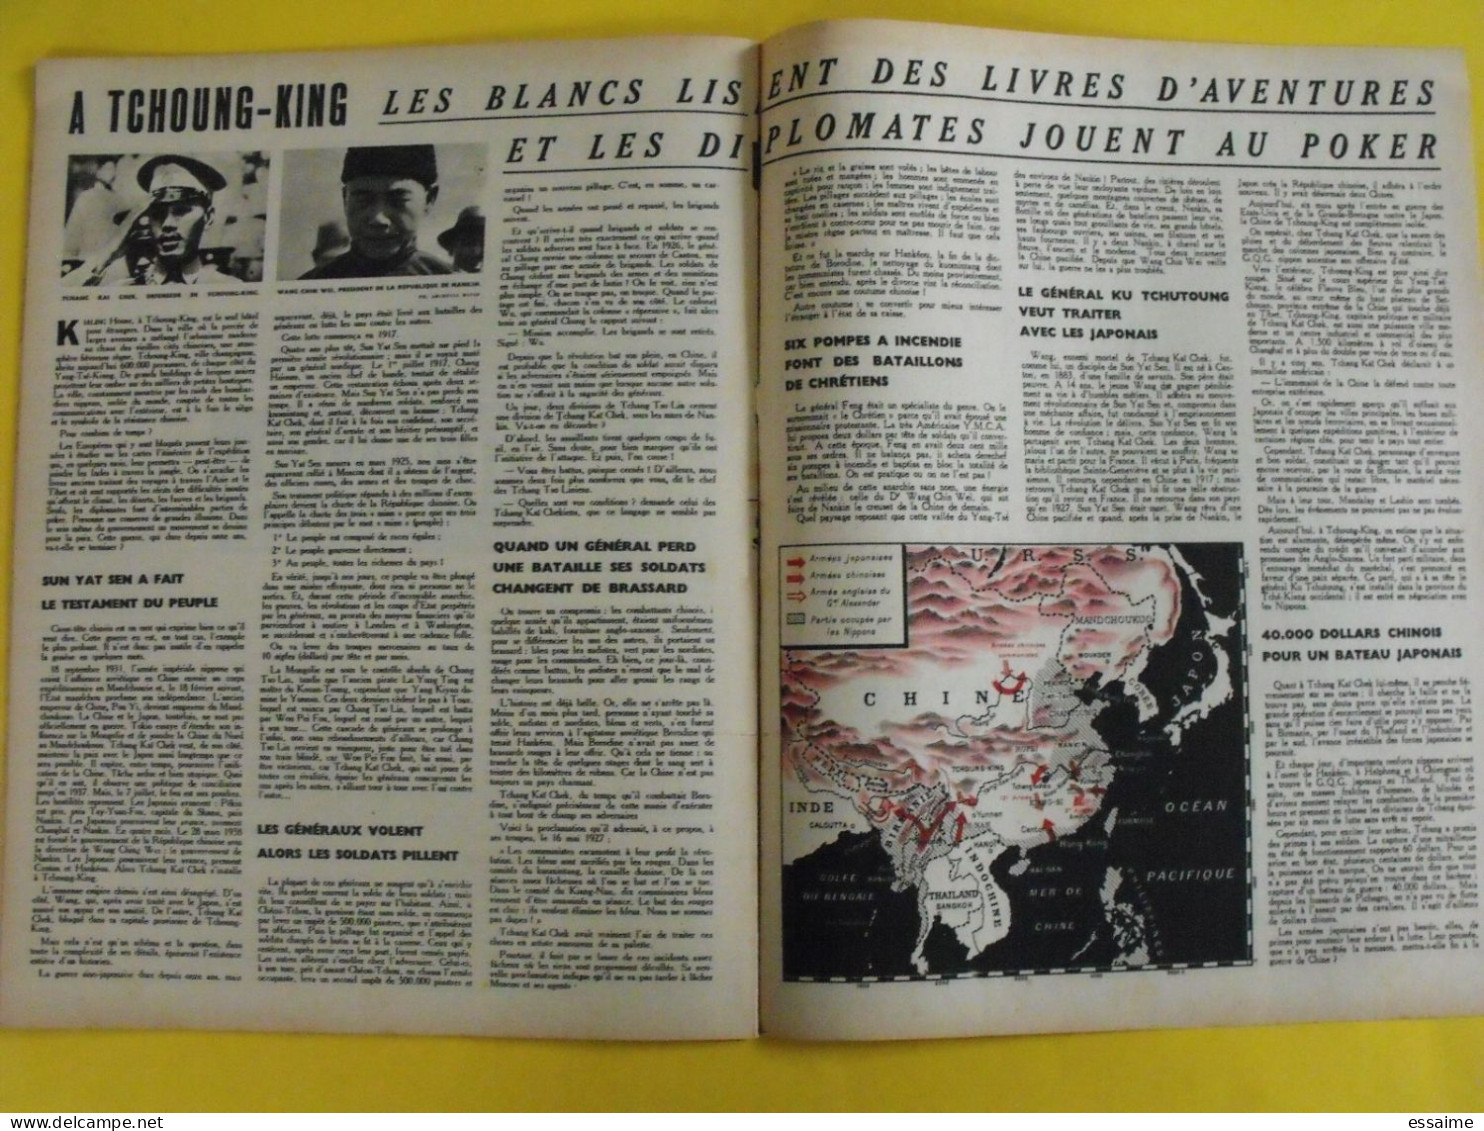 6 revues La semaine de 1942. actualités guerre photos collaboration madagascar jean marais pétain chine crimée inde